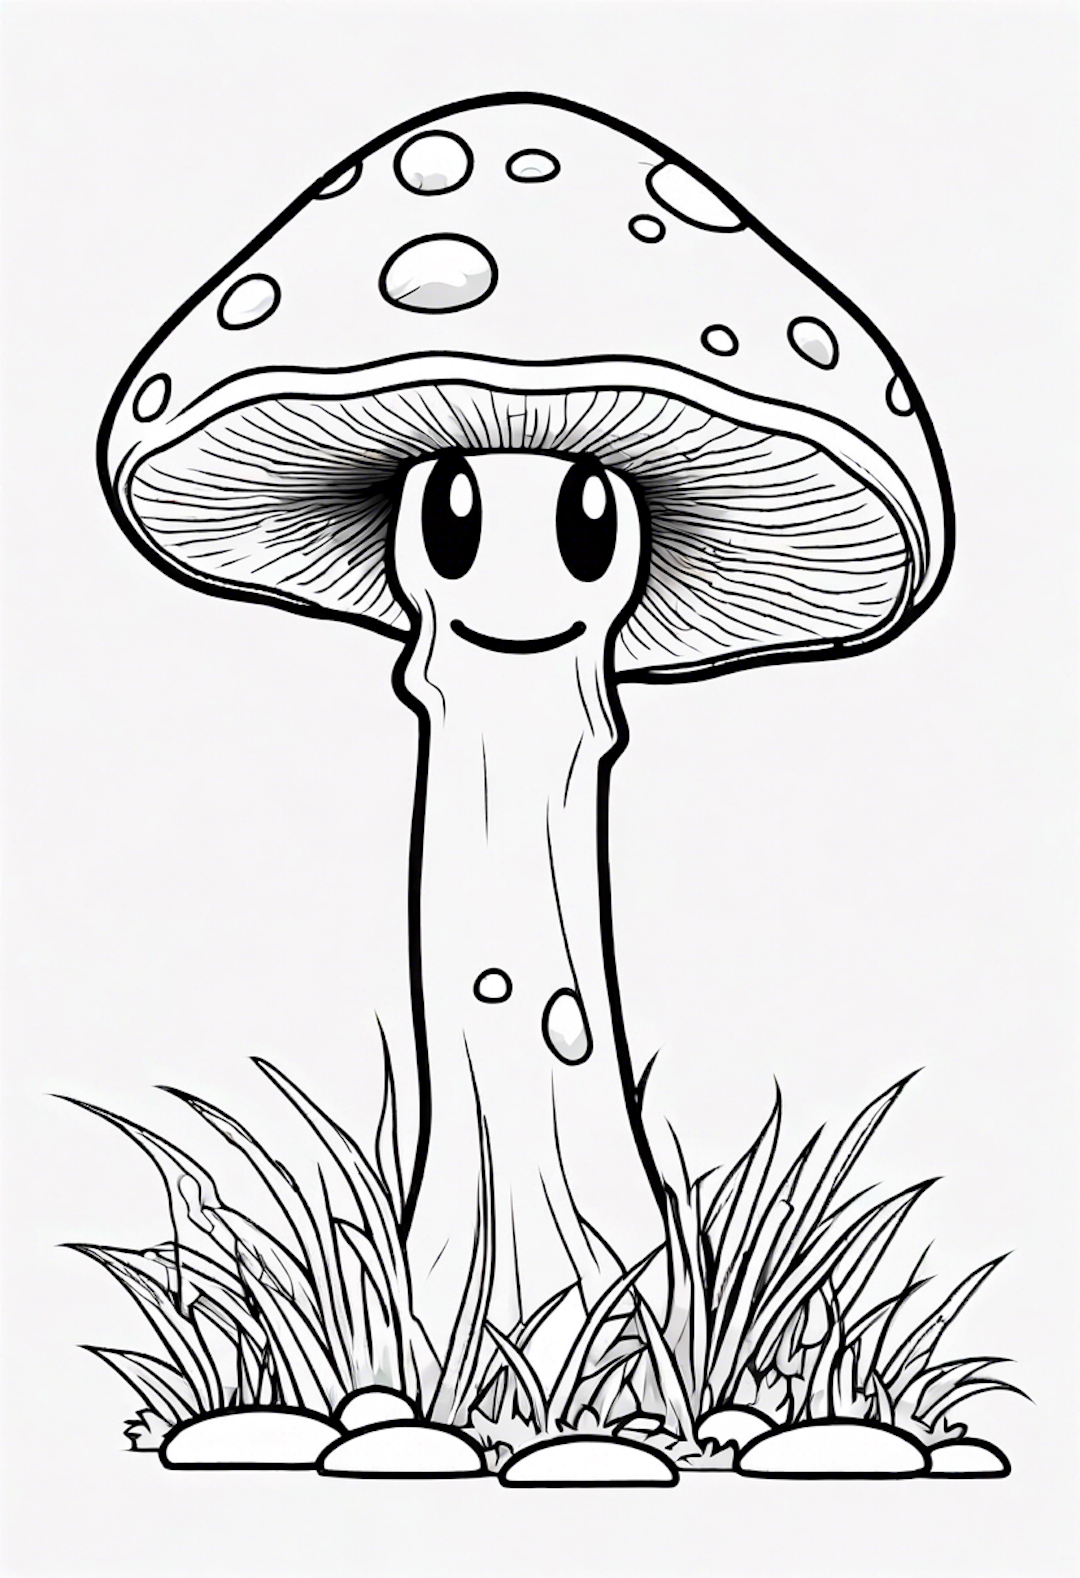 A Cartoon Mushroom Sleeping